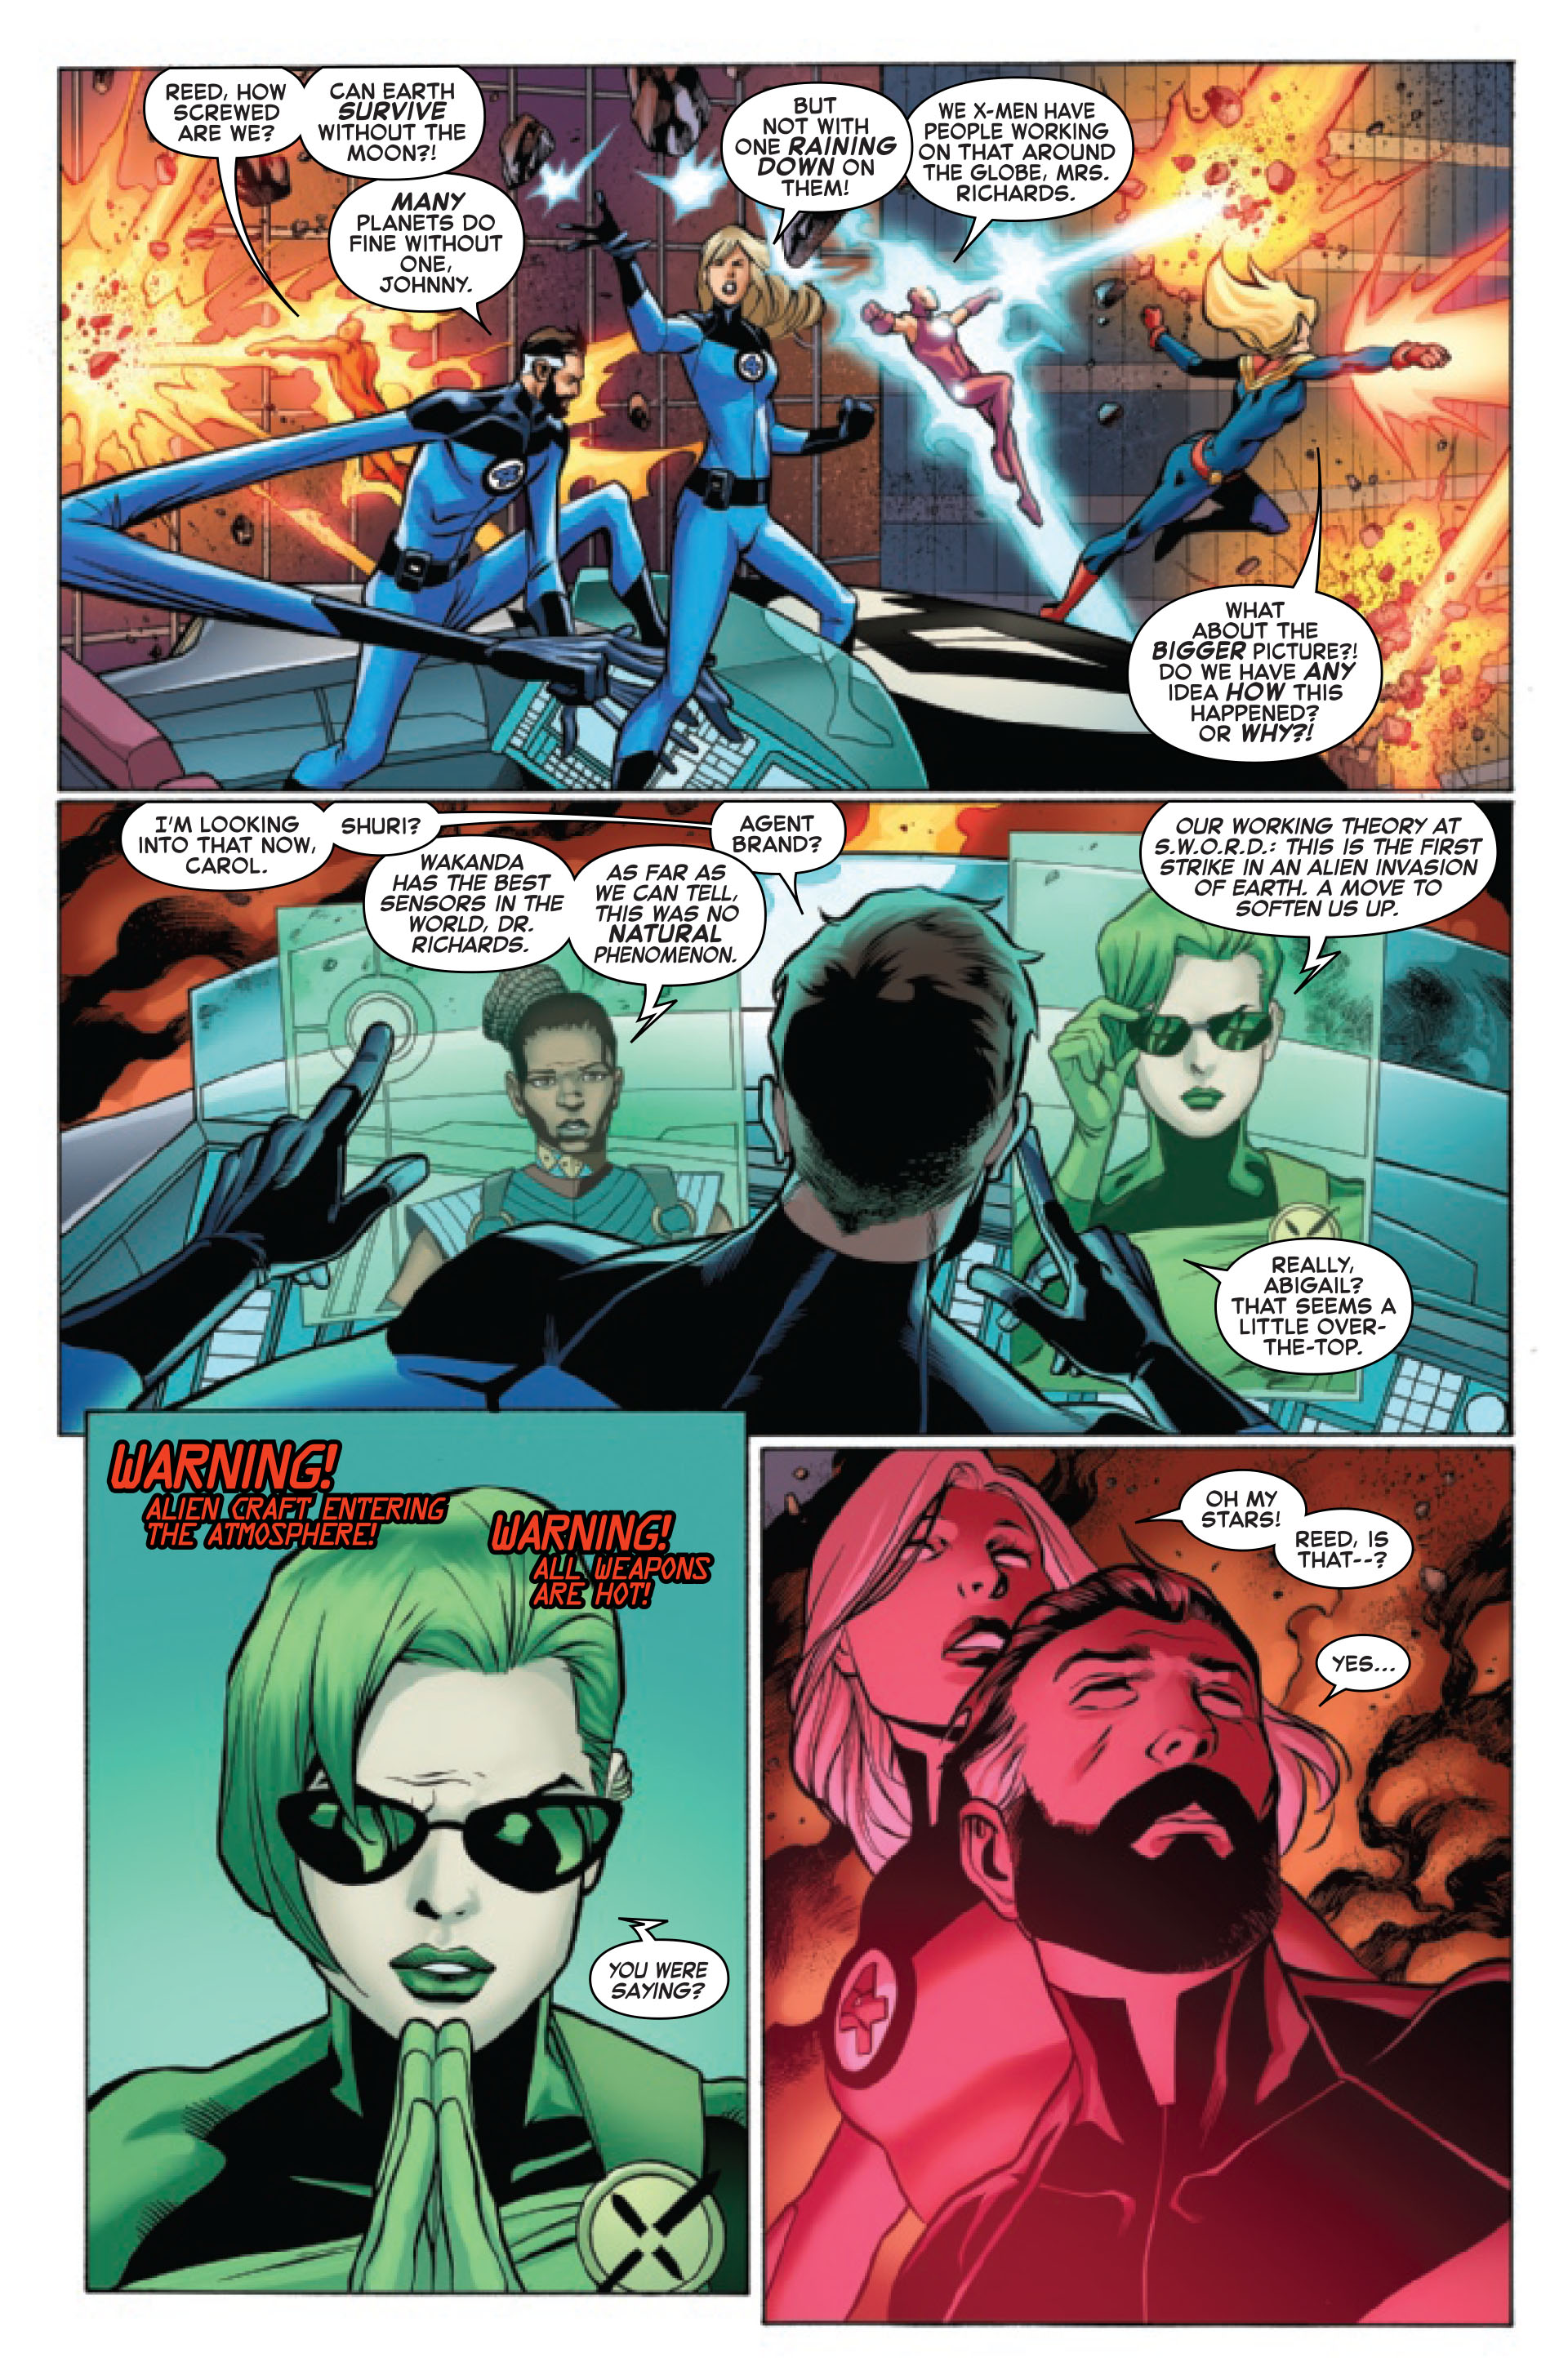 Fantastic Four: The Reckoning War Alpha Nr. 1